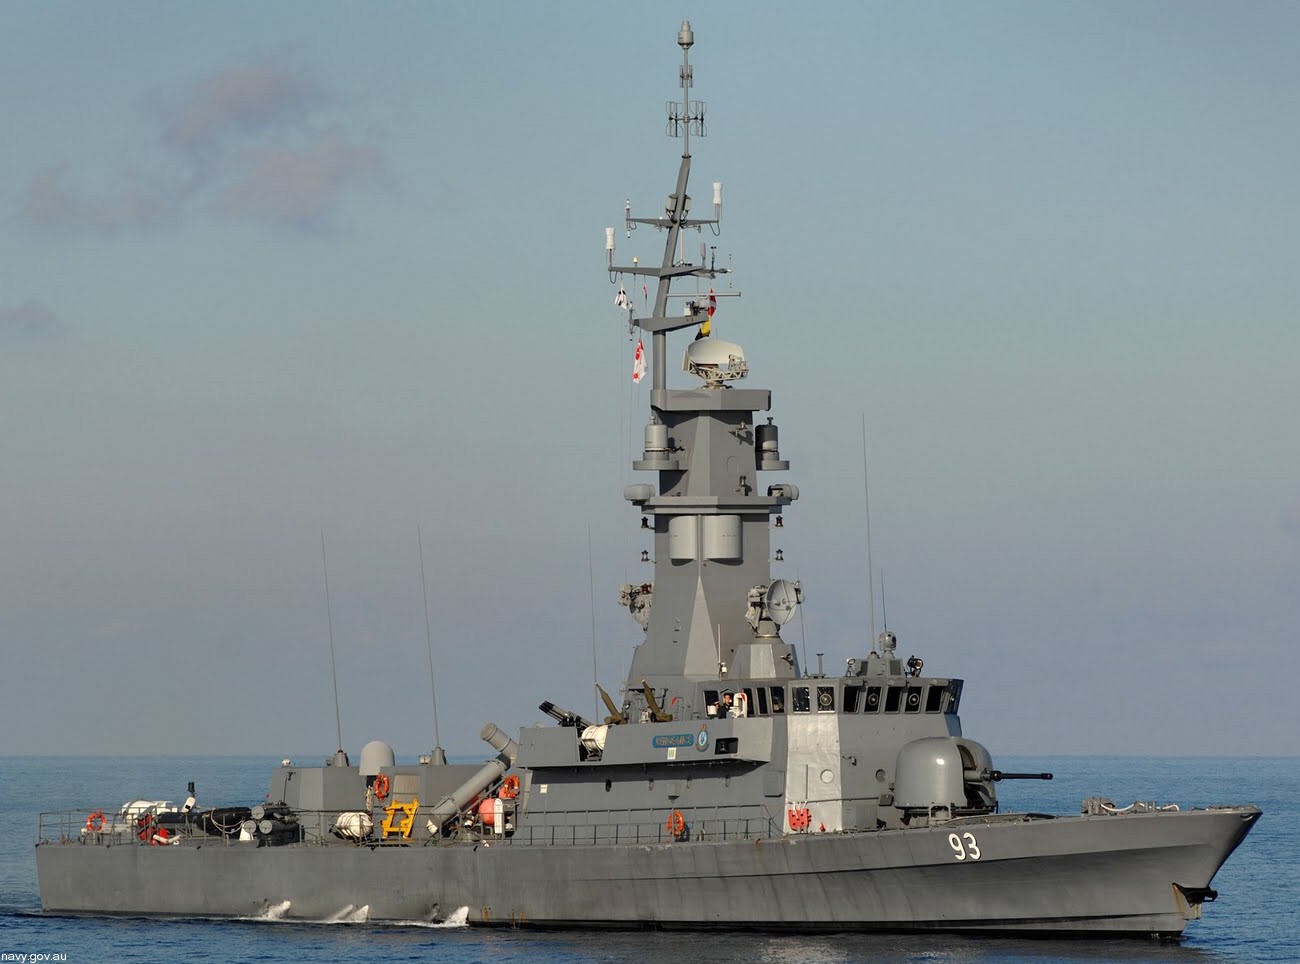 93 rss vengeance victory class missile corvette republic singapore navy 03